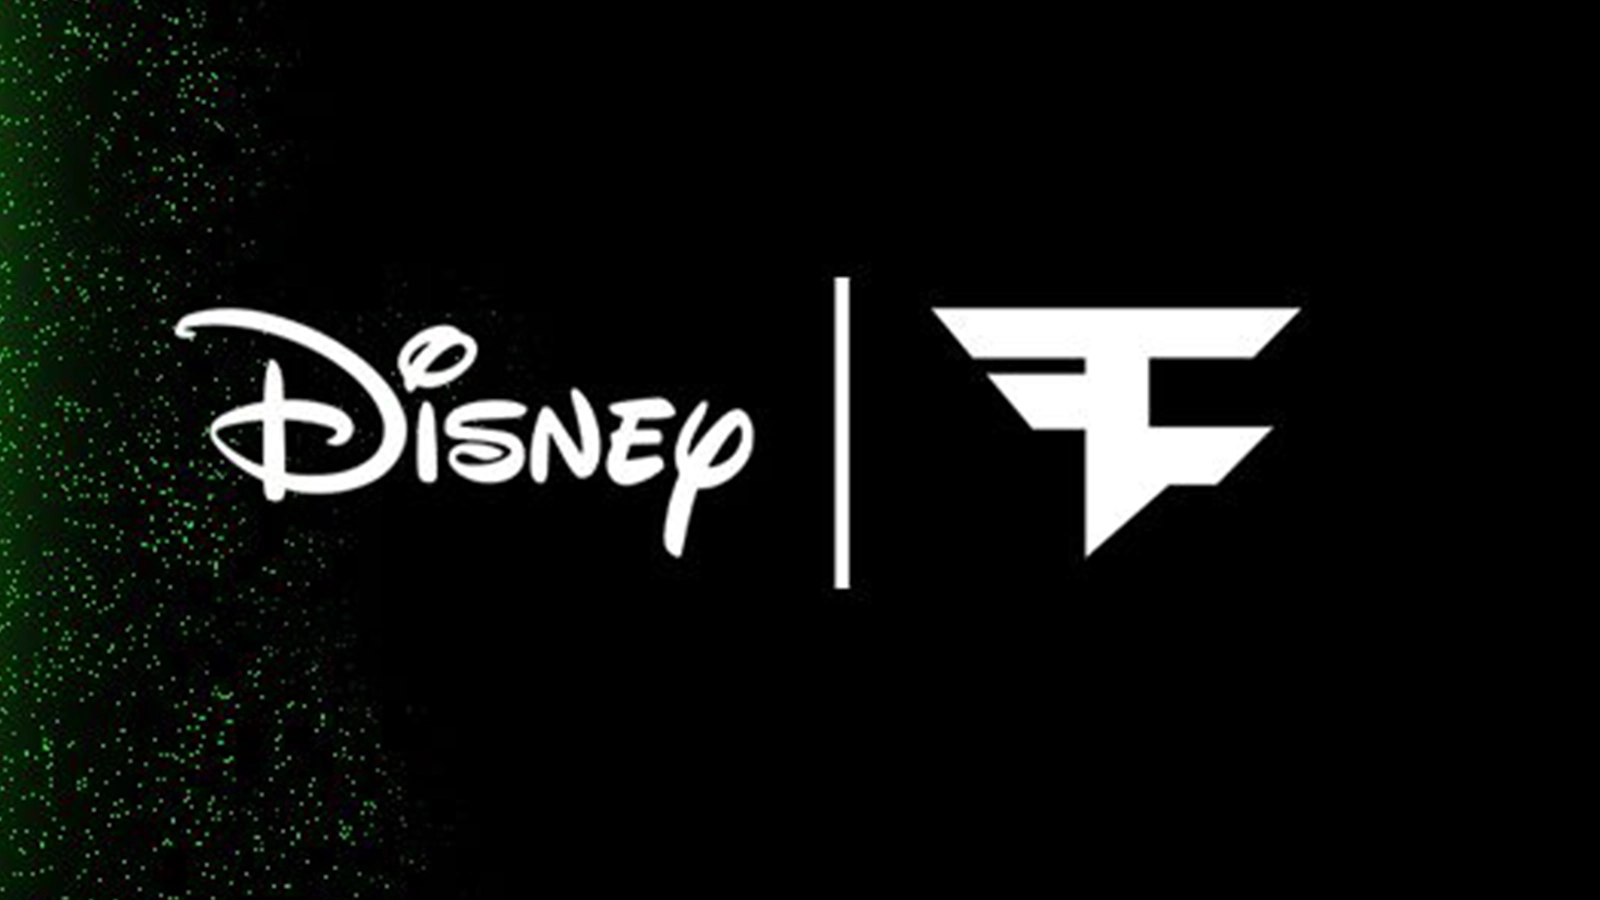 faze clan heeft een jaarlange samenwerking aangekondigd met Disney!